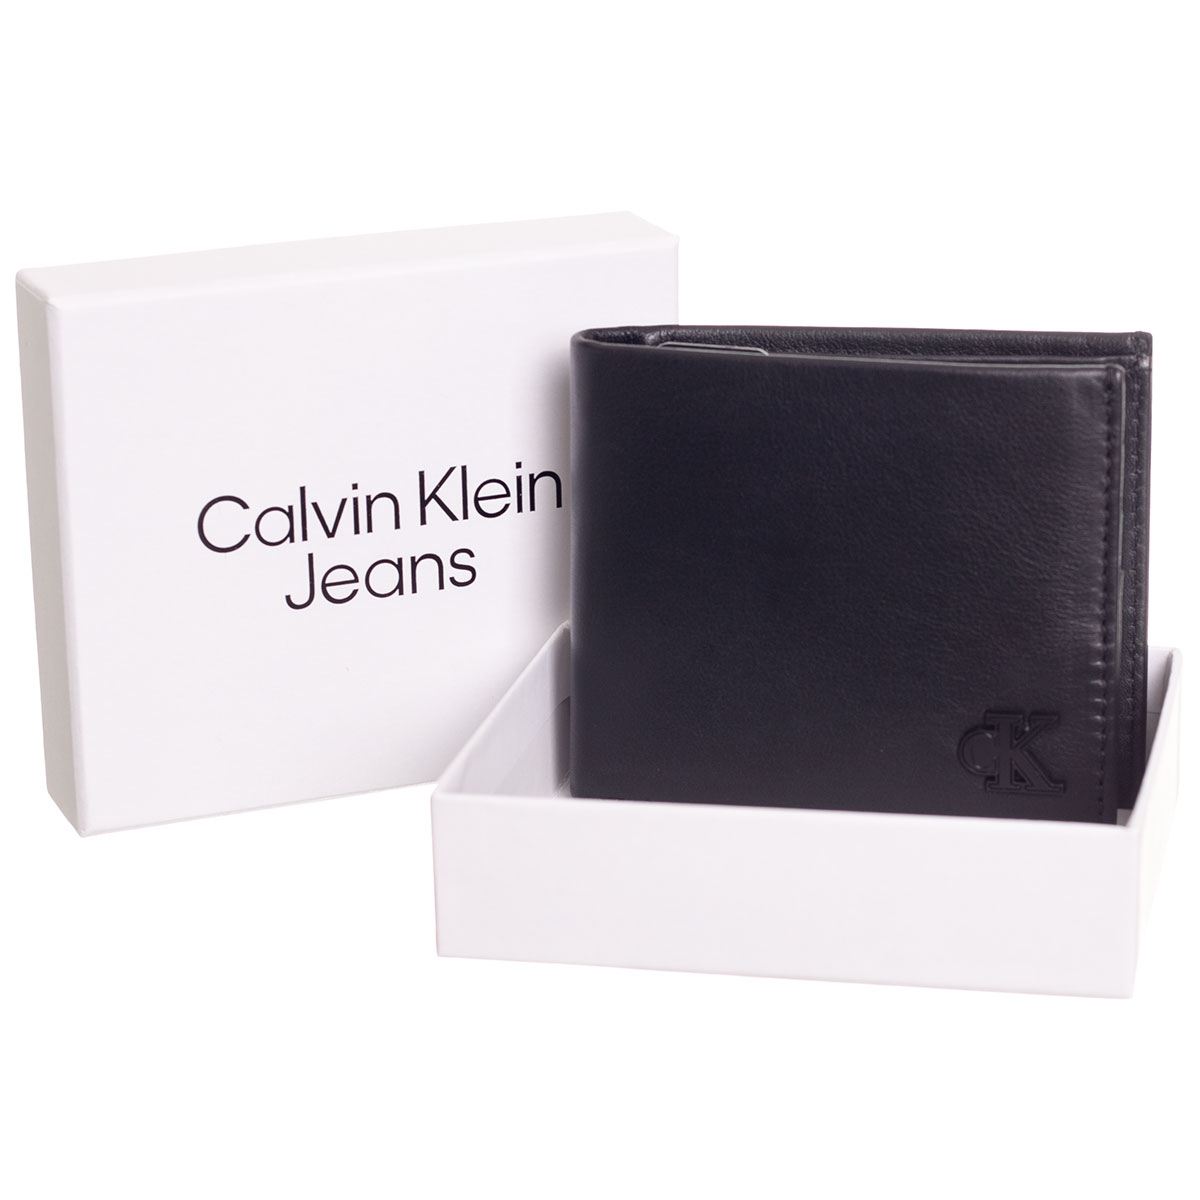 Calvin Klein Jeans Man's Wallet 8720107640450